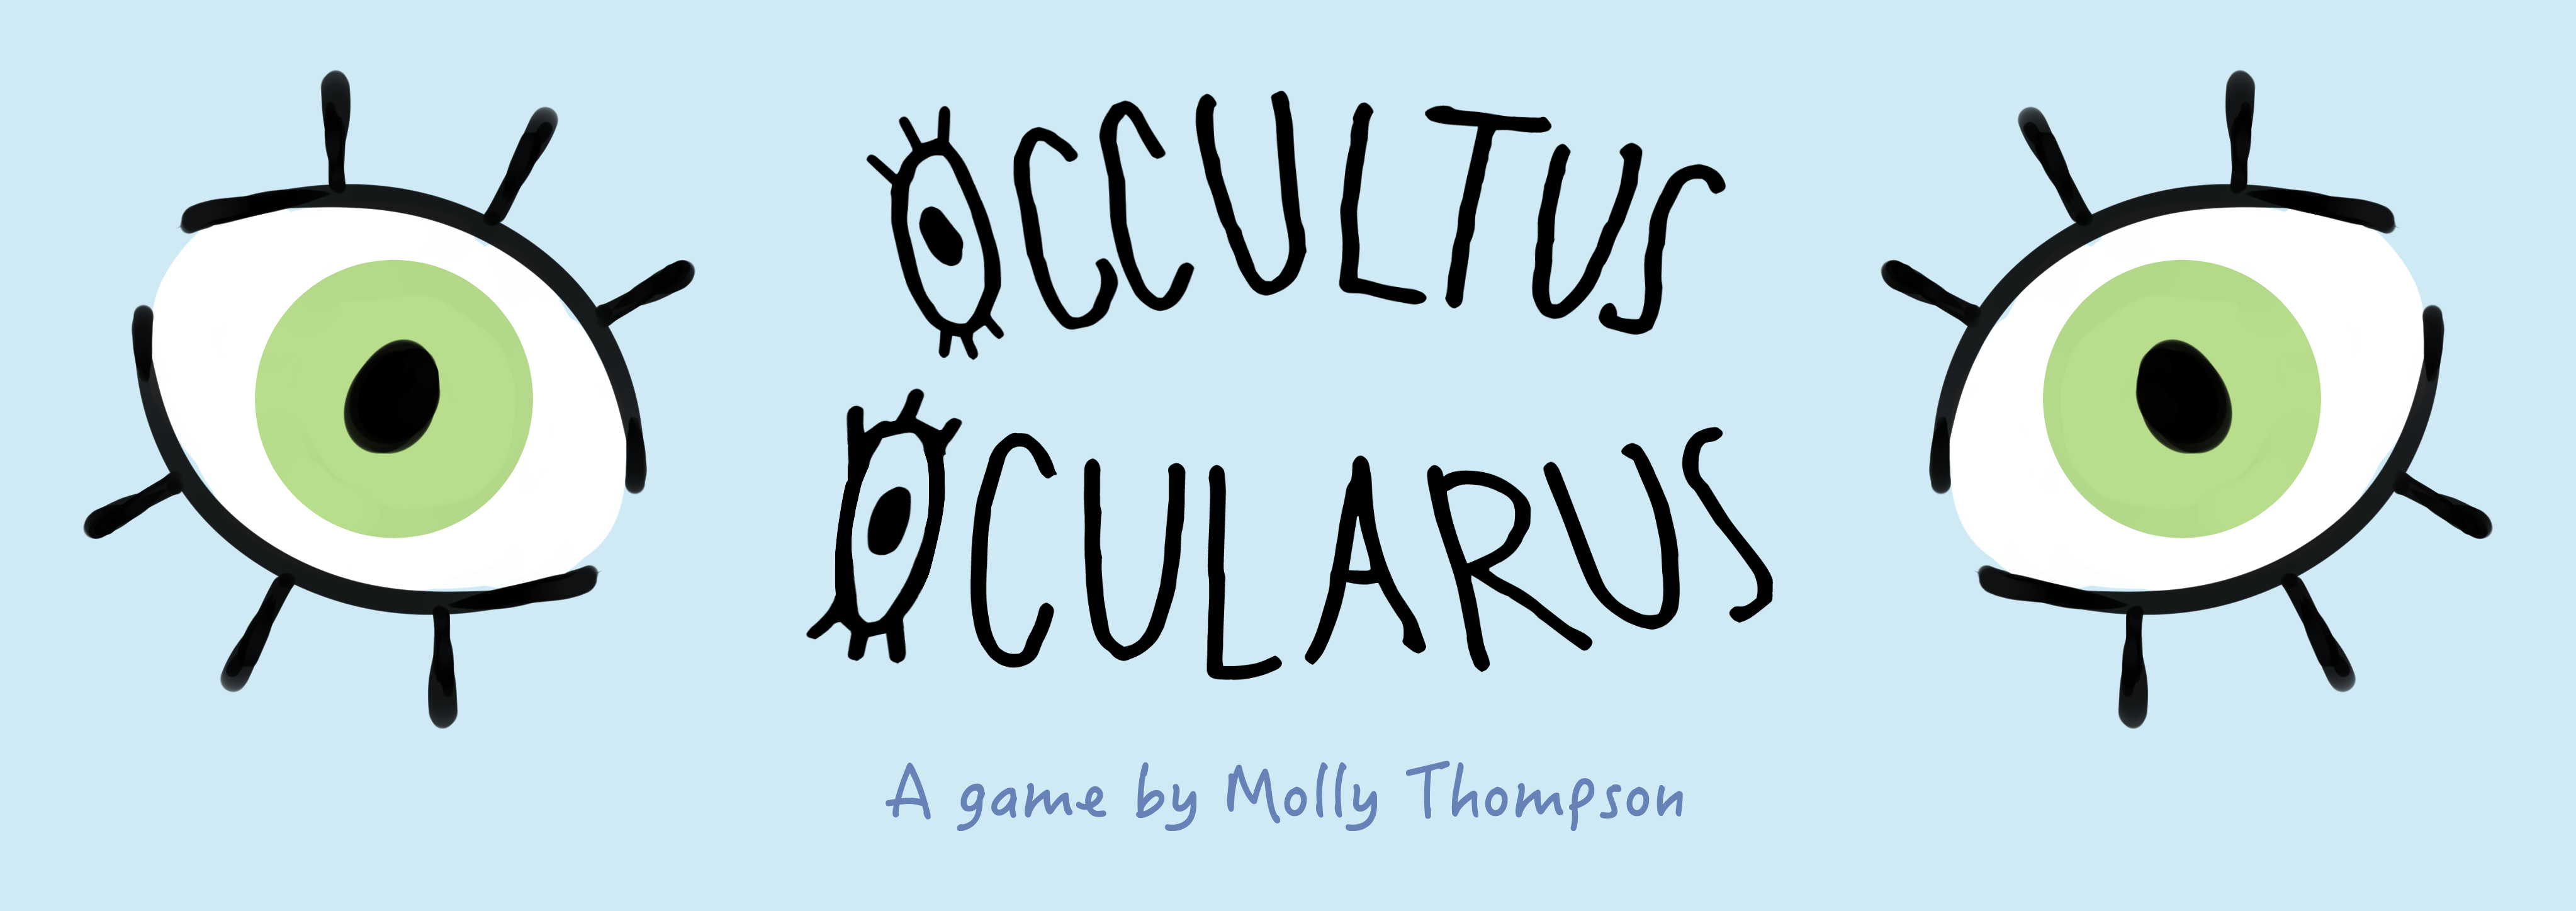 Occultus Ocularus